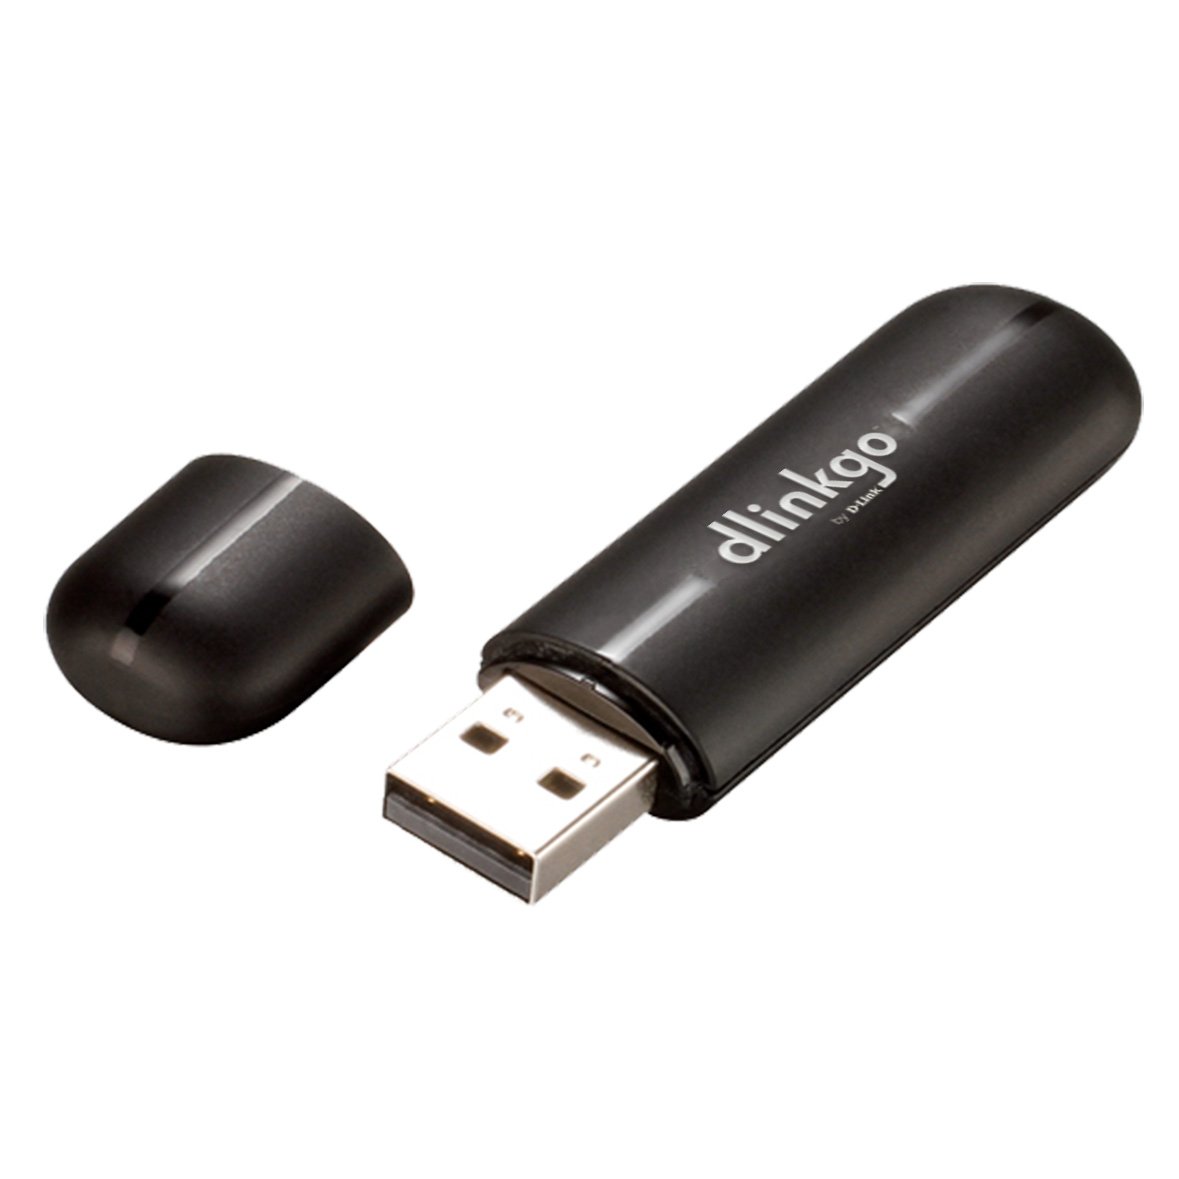  Adaptor Wireless D-Link N150 GO-USB-N150, USB 